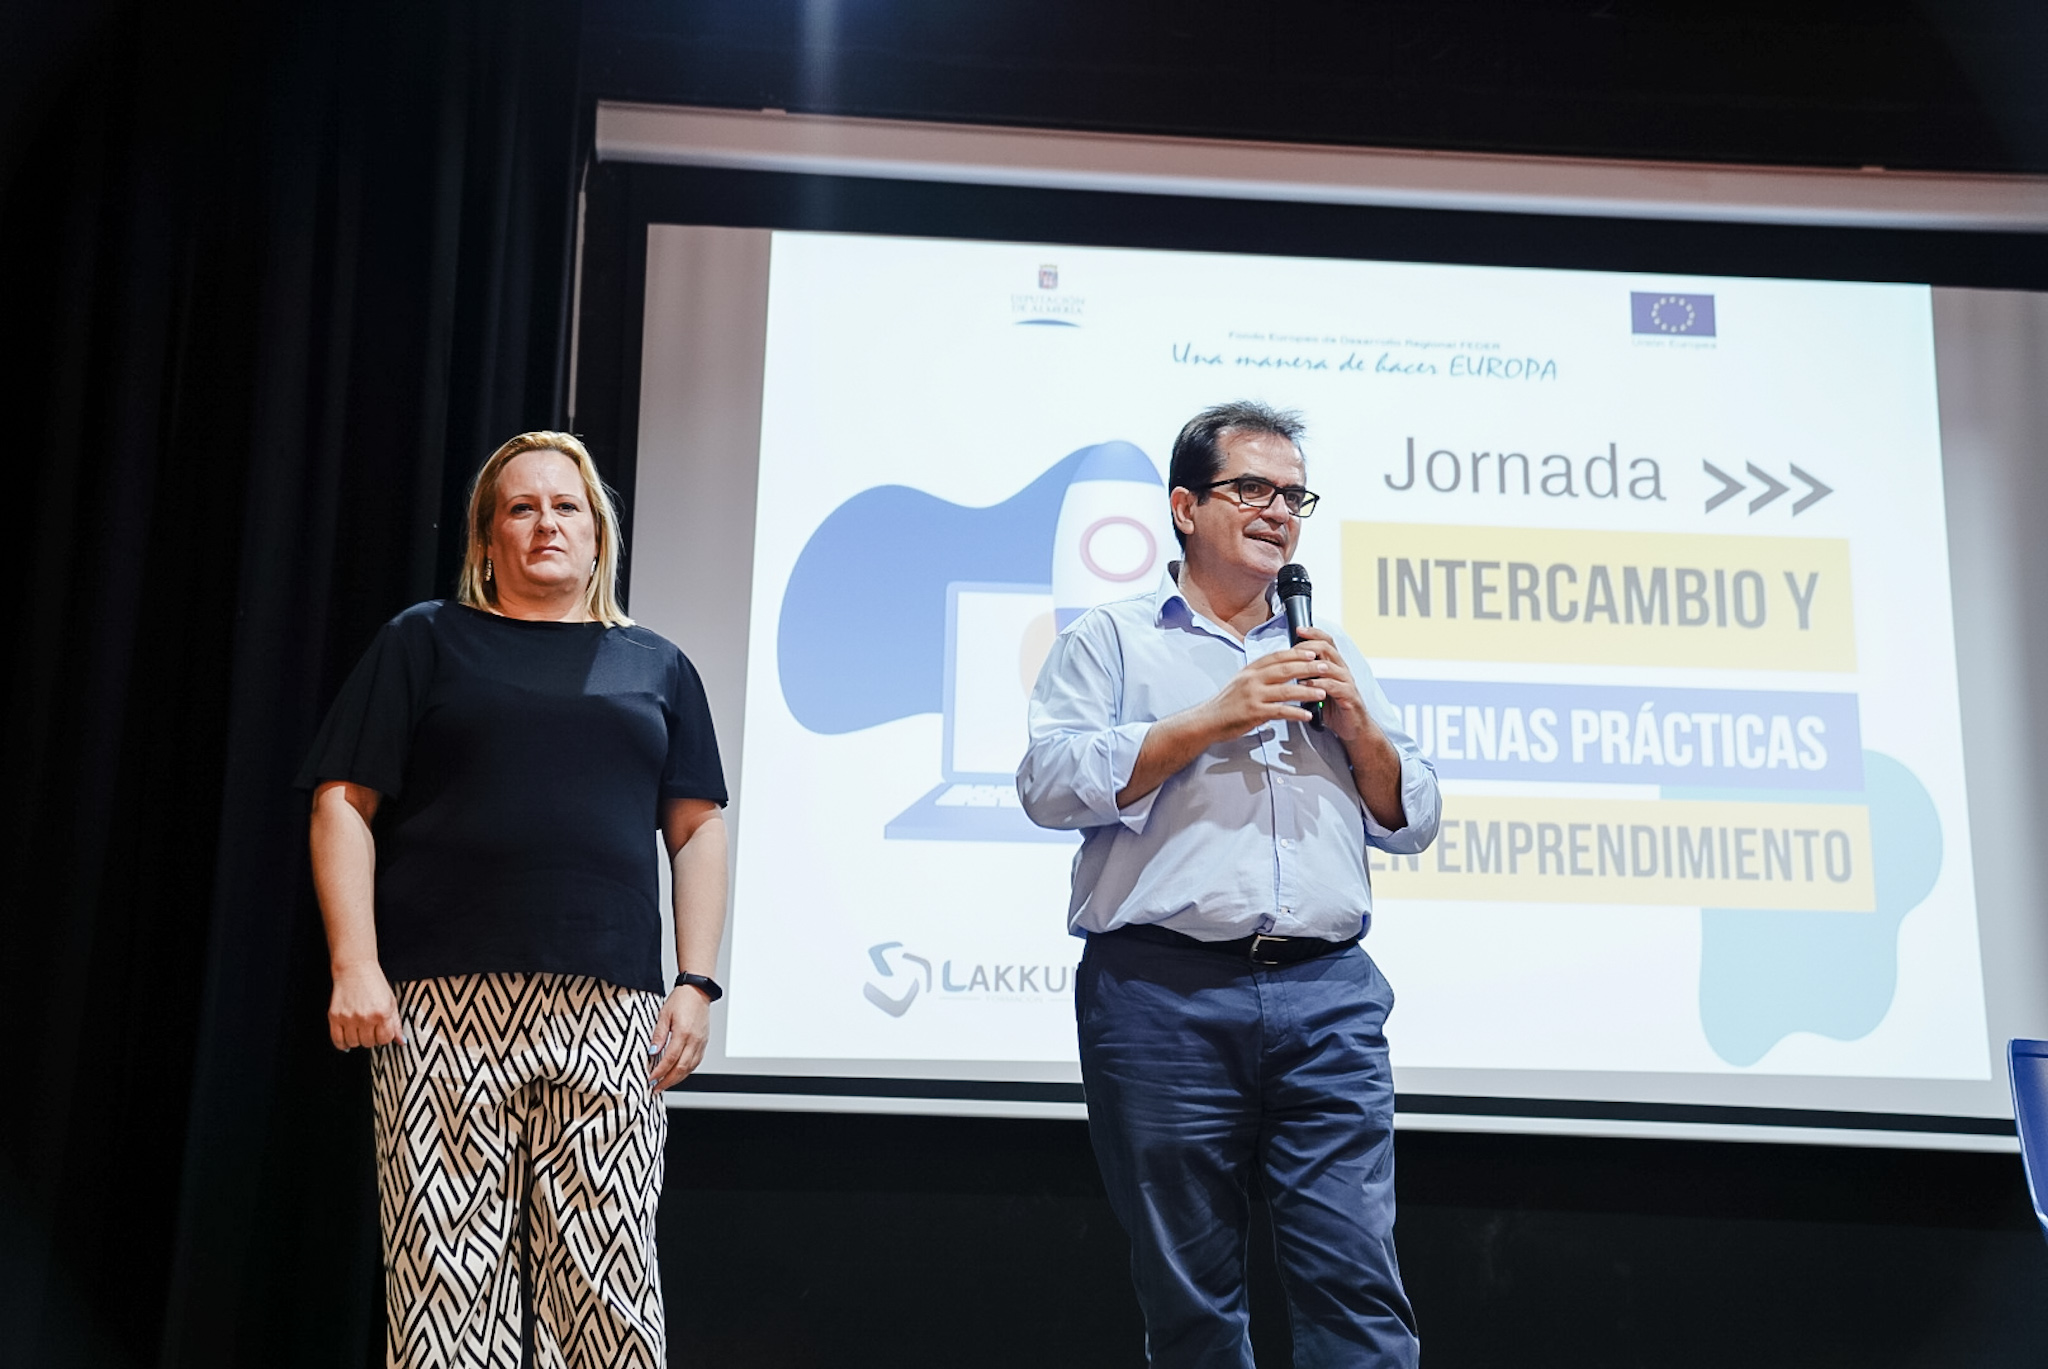 Diputación reúne a los emprendedores de Huércal de Almería con sus jornadas de Intercambio y Buenas Prácticas